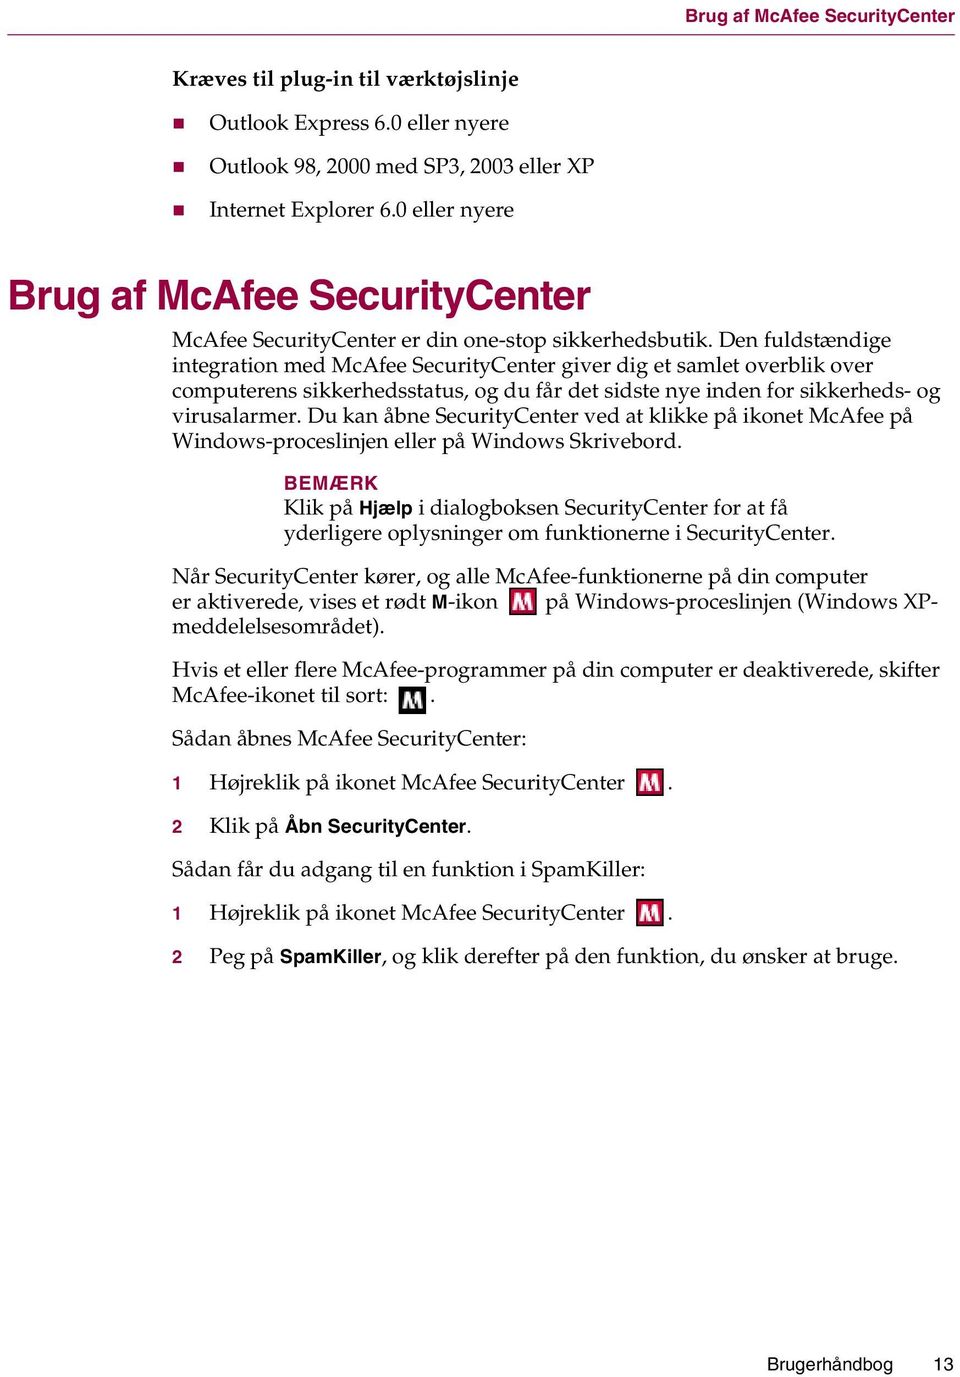 Den fuldstændige integration med McAfee SecurityCenter giver dig et samlet overblik over computerens sikkerhedsstatus, og du får det sidste nye inden for sikkerheds- og virusalarmer.